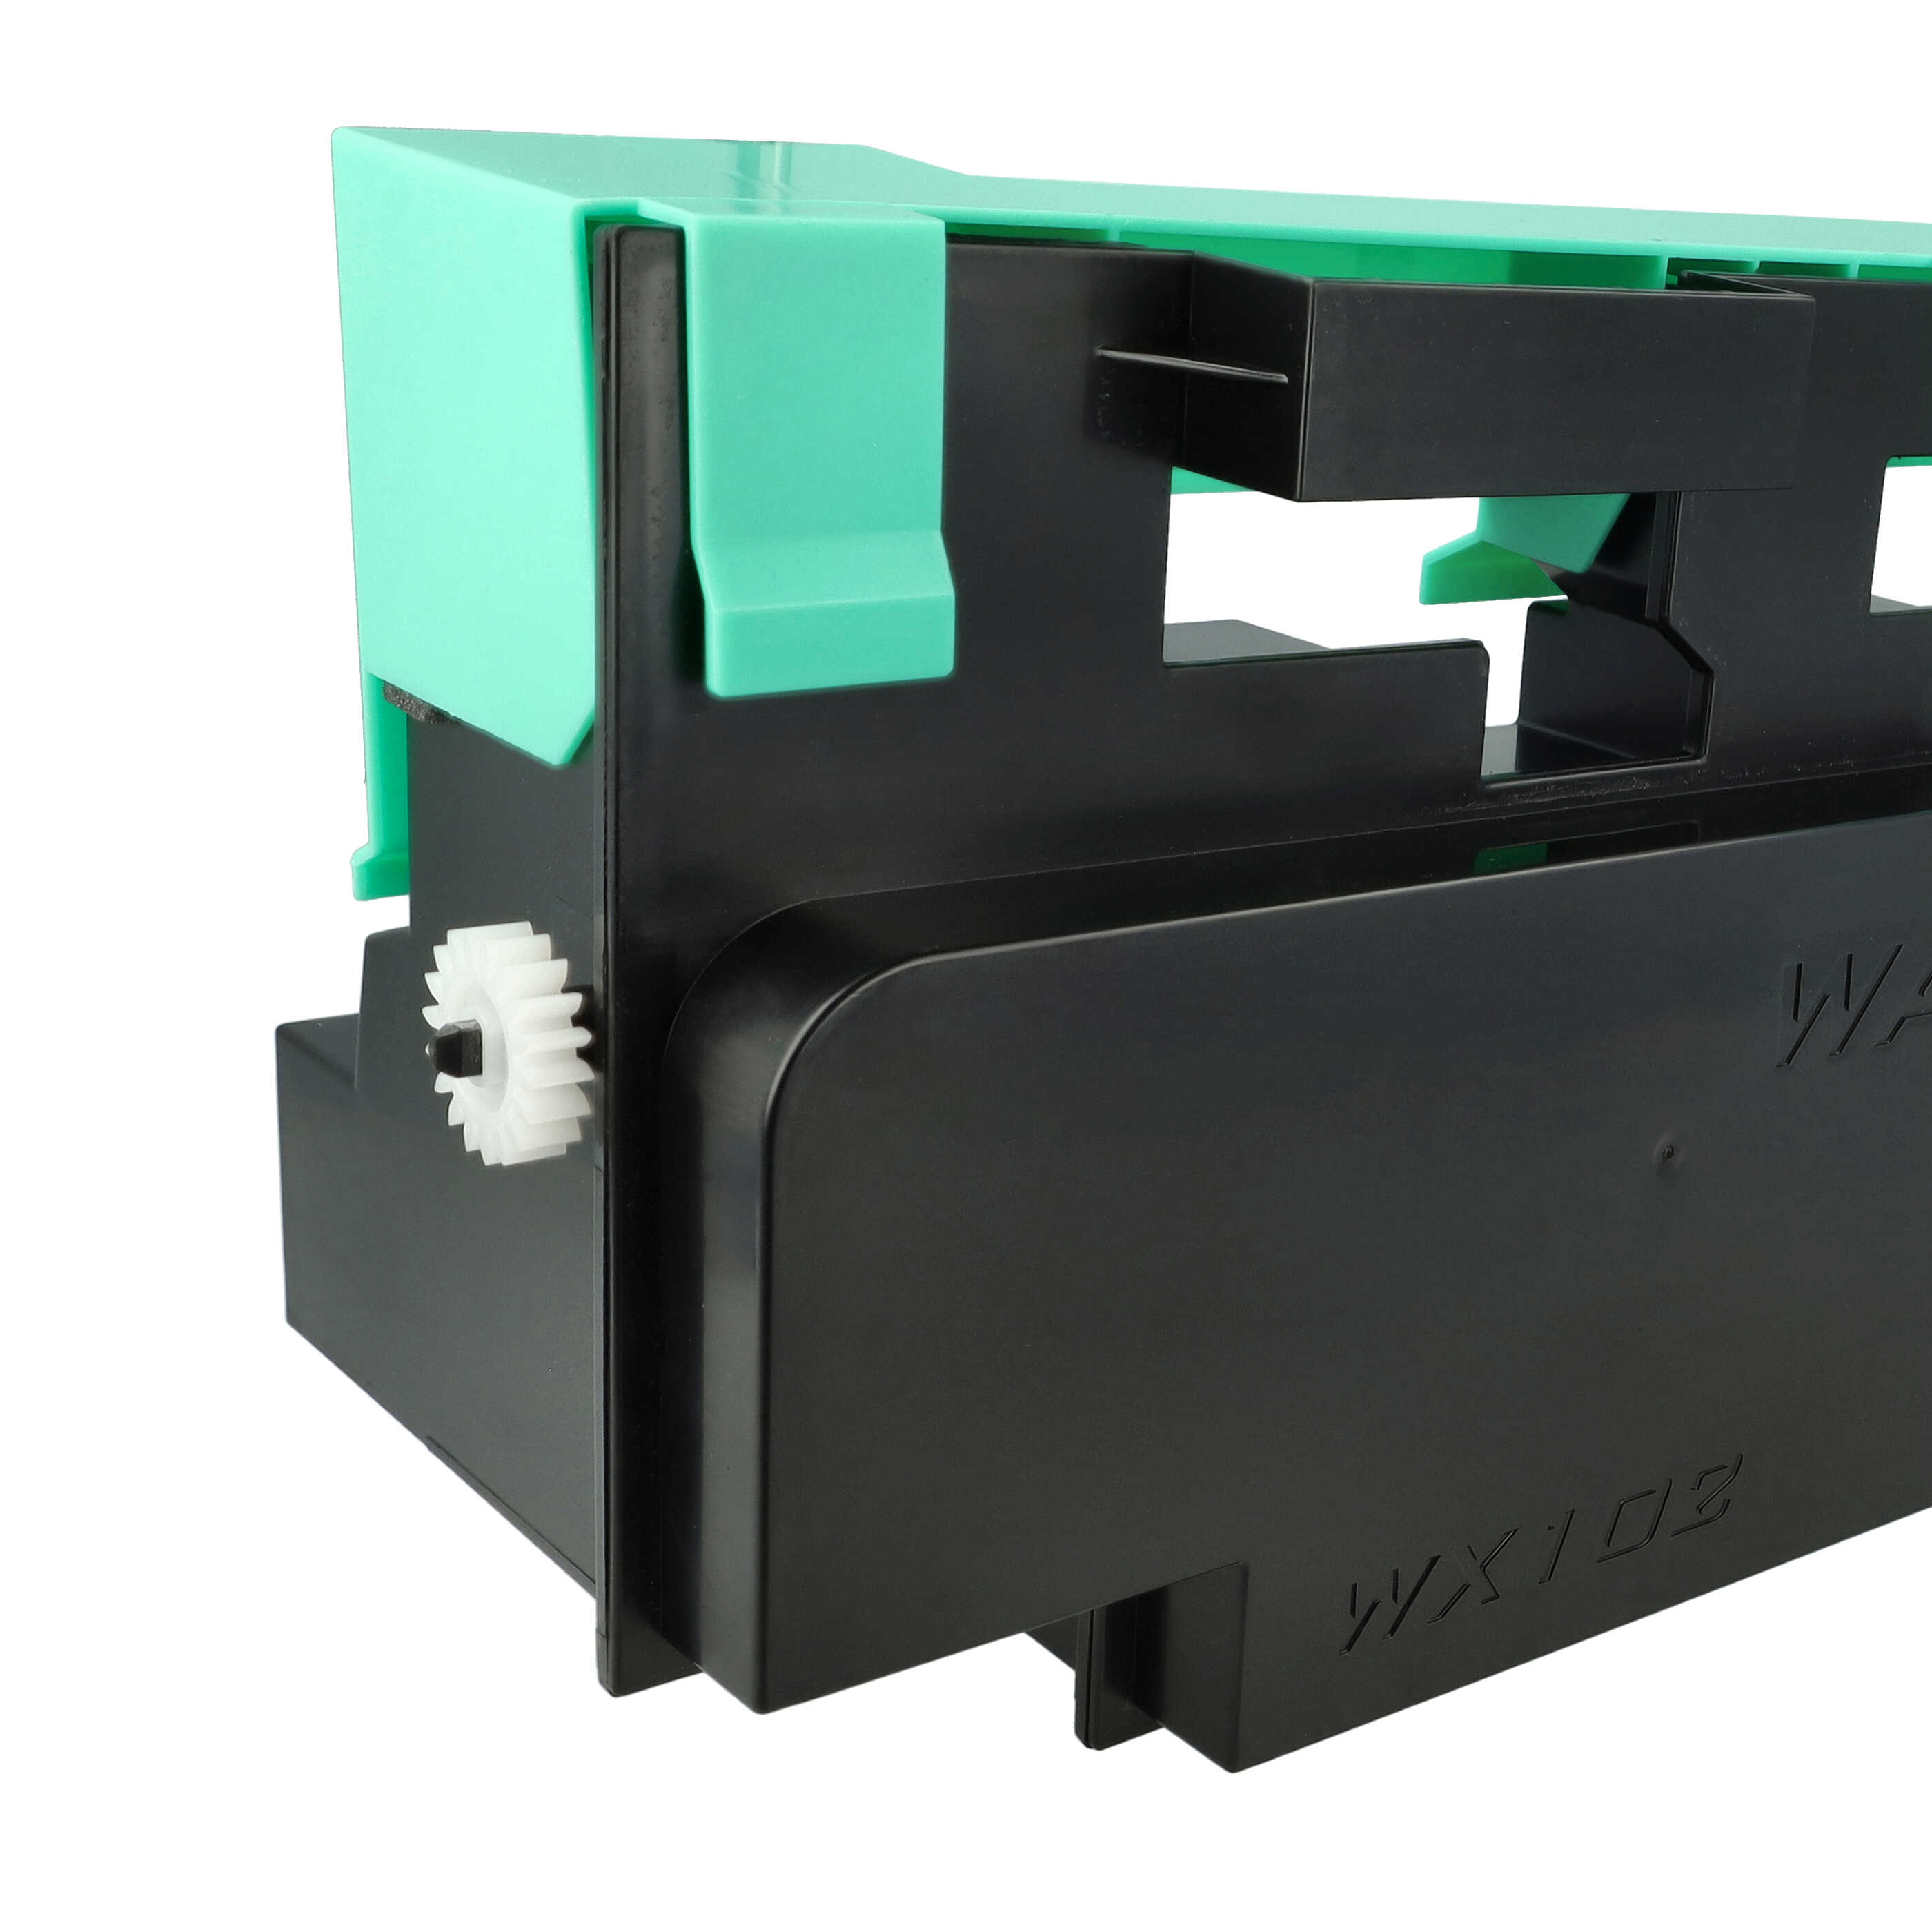 Pojemnik na zużyty toner do drukarki laserowej zam. Konica Minolta A0XPWY2, 1008661, A0XPWY5, A0XPWY4 - czarny